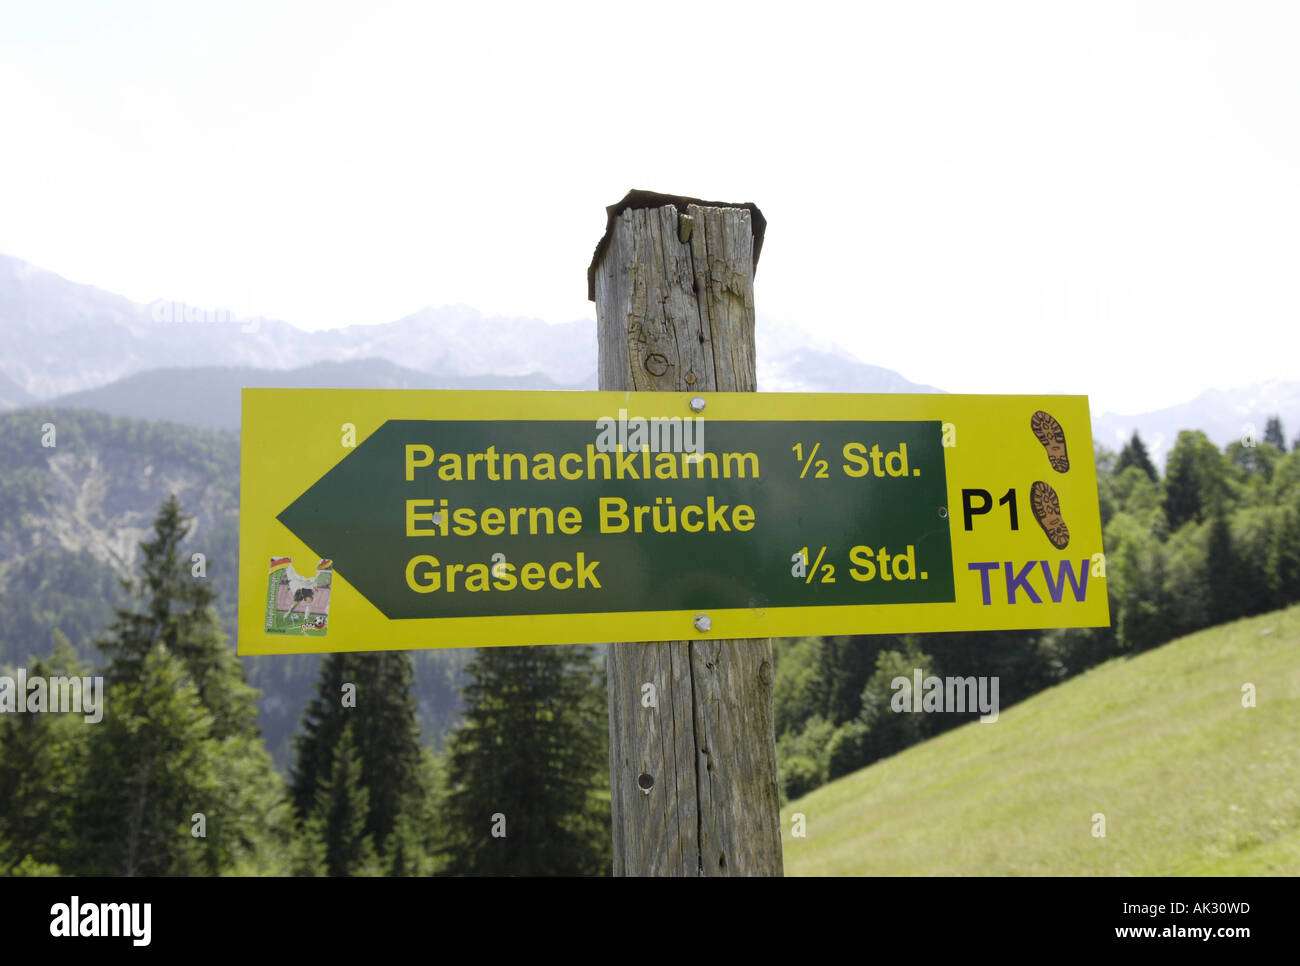 Partnachklamm Eiserne Brücke Graseck Trail Schild Schild Gelb Grün natürlichen ländlichen Coutnryside alpine Trail Trek Wanderung g Stockfoto